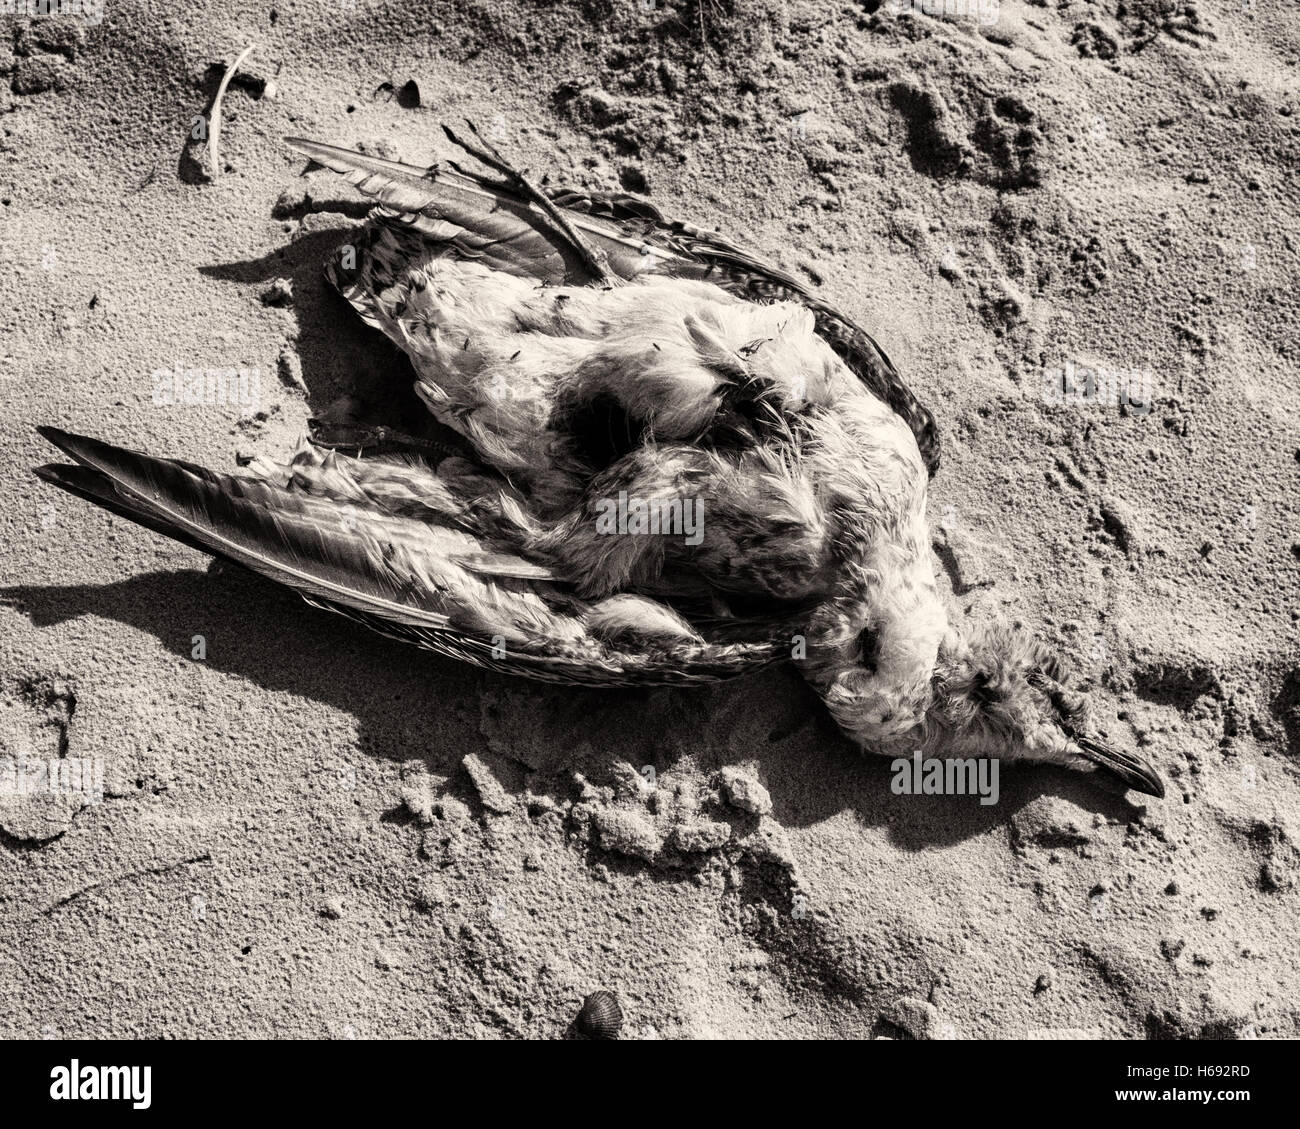 Am Strand, Langeoog. Deutschland Deutschland. Eine tote Seevögel gefunden am Sandstrand. Es ist ein Sonniger Tag verursacht starke Schatten und hohen Kontrast in den Sand. Stockfoto